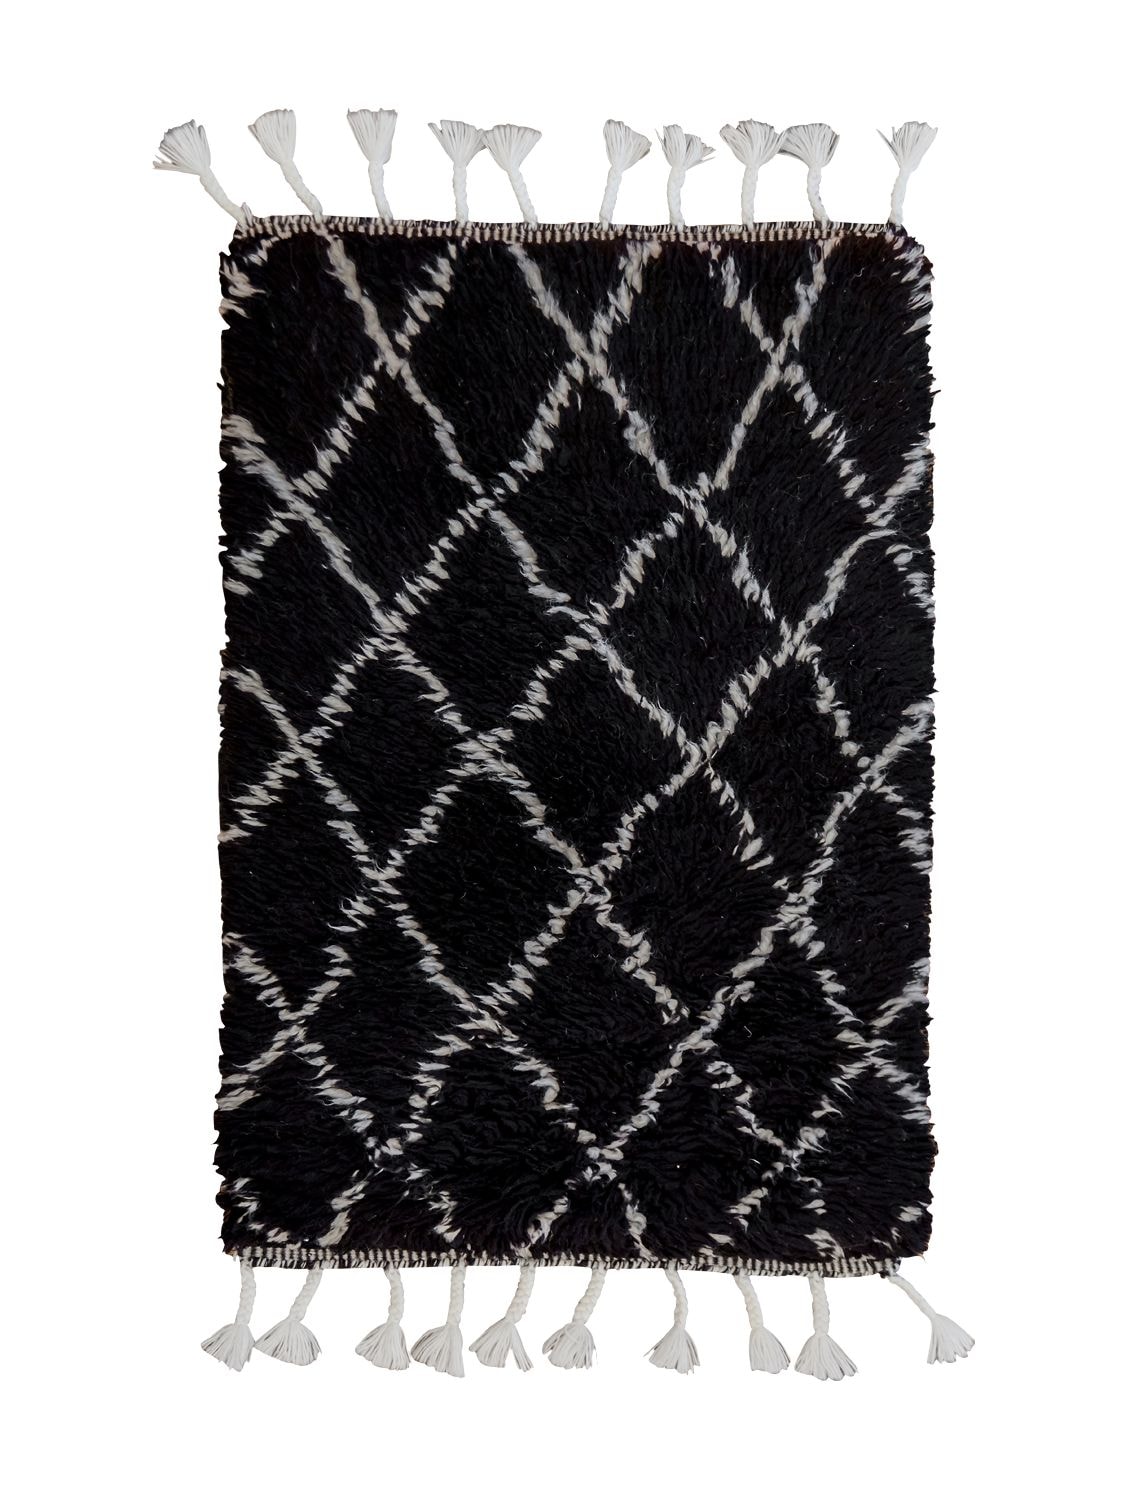 Studio Maleki Rombus Small Handmade, Black And White Herringbone Wool Rug